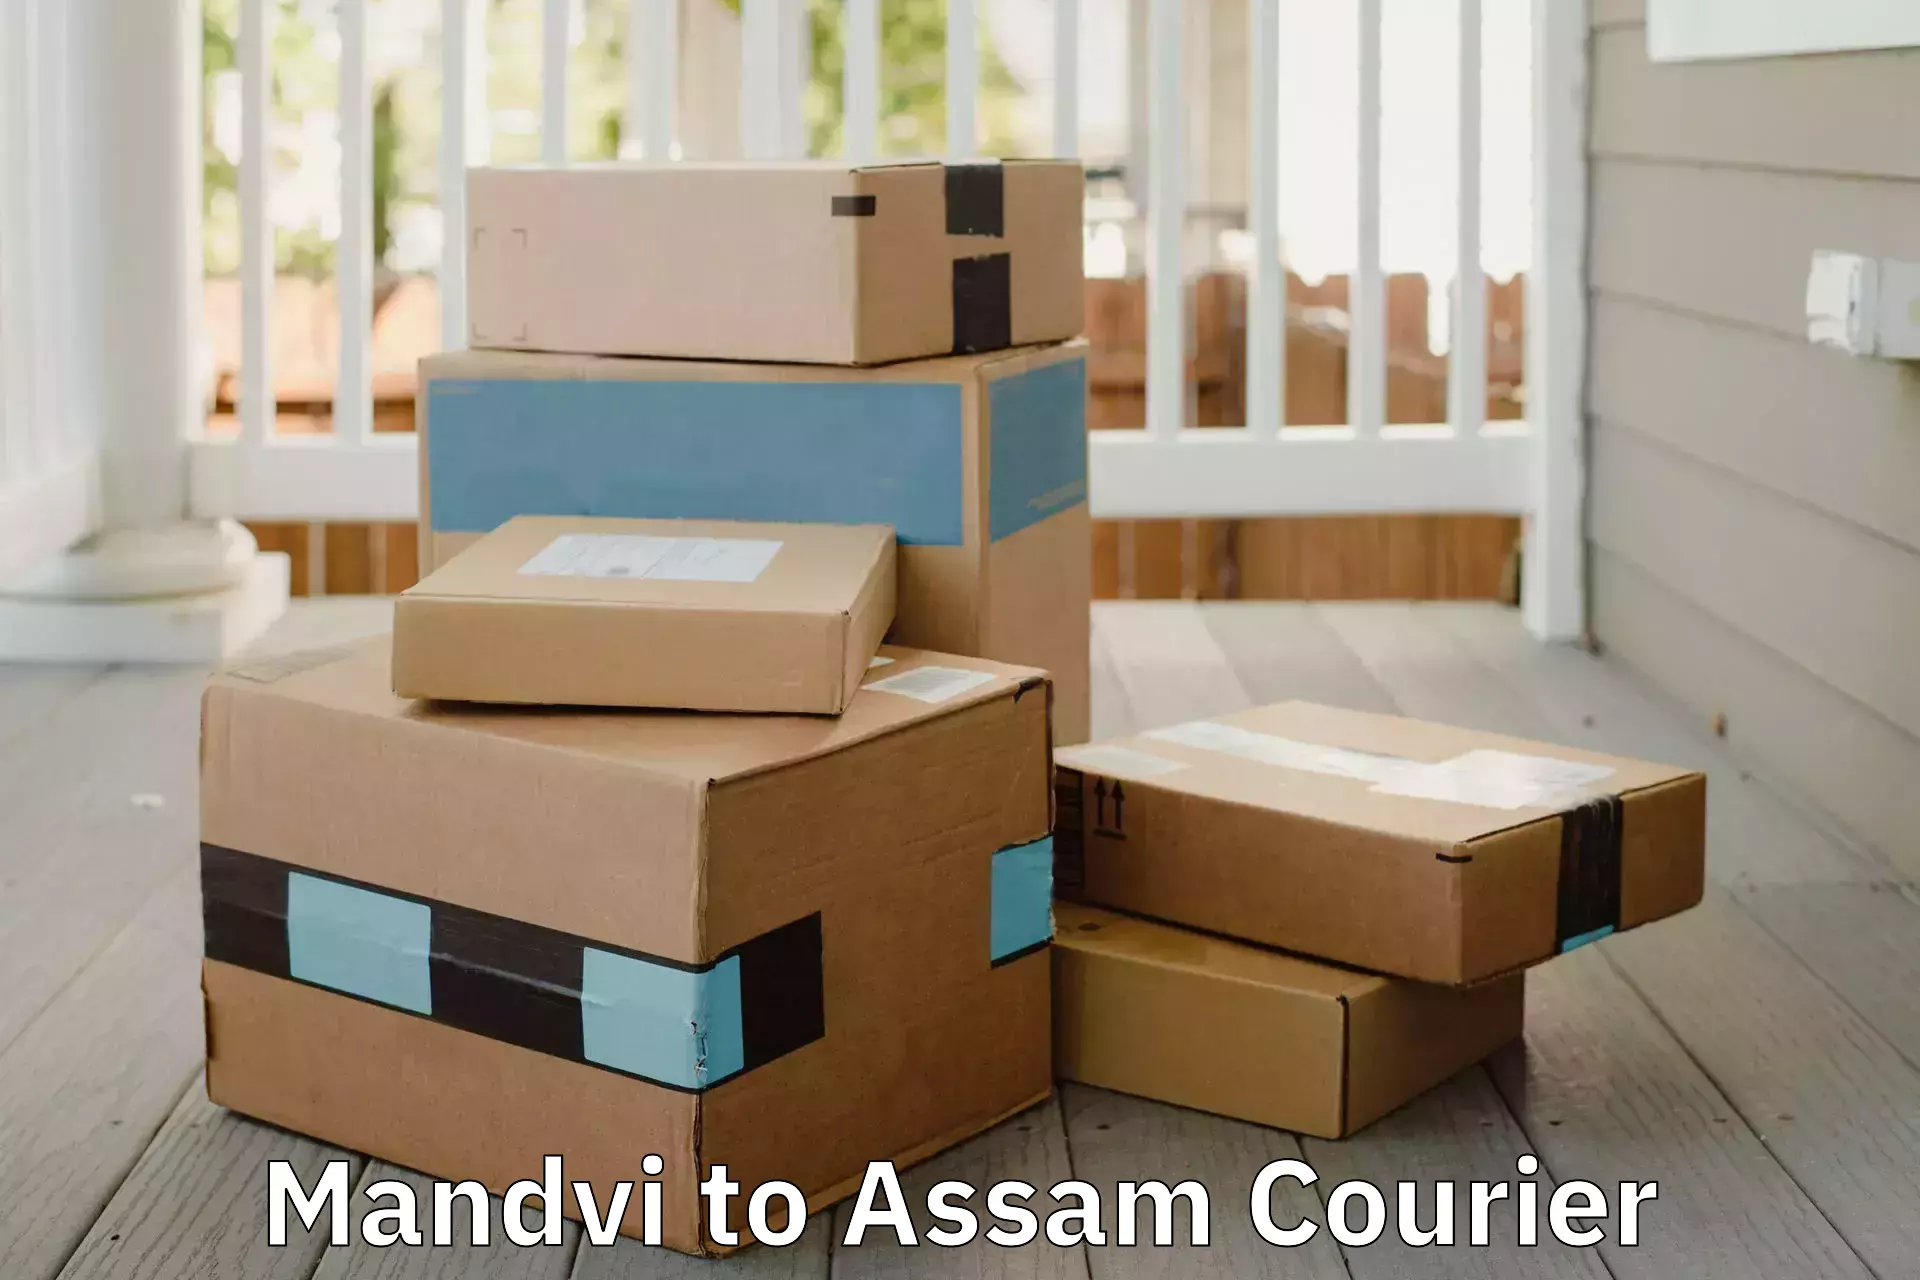 Comprehensive relocation services Mandvi to Assam